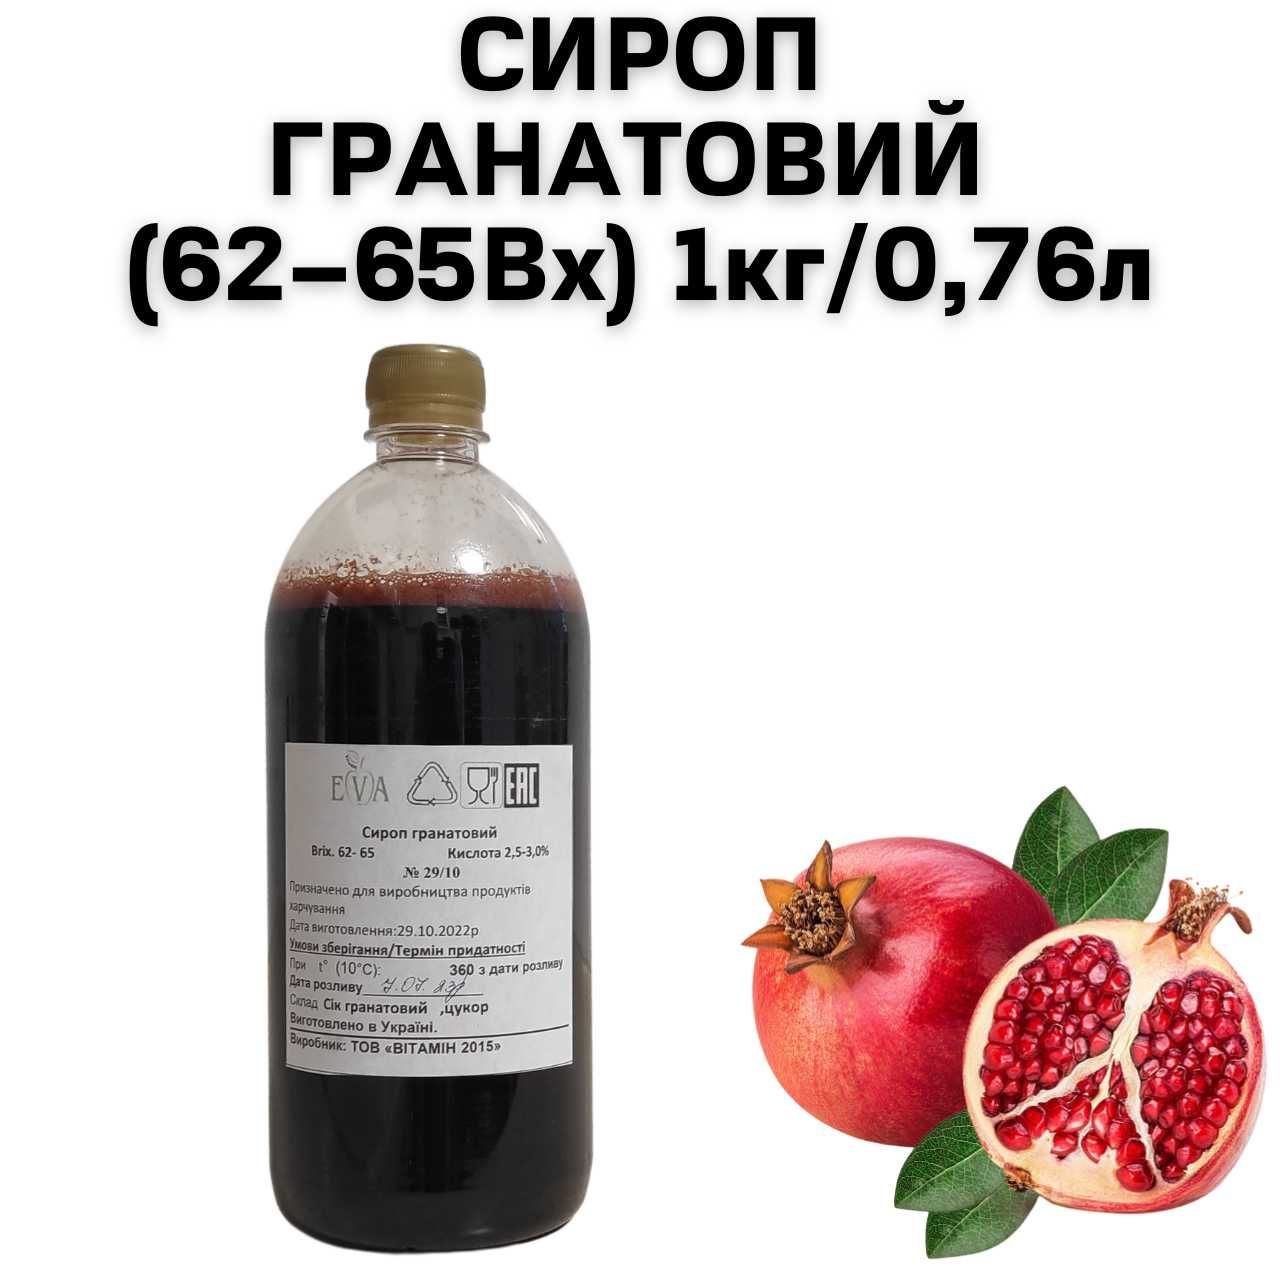 Сироп Гранатовый (62–65Вх) бутылка 1 кг / 0.76 л